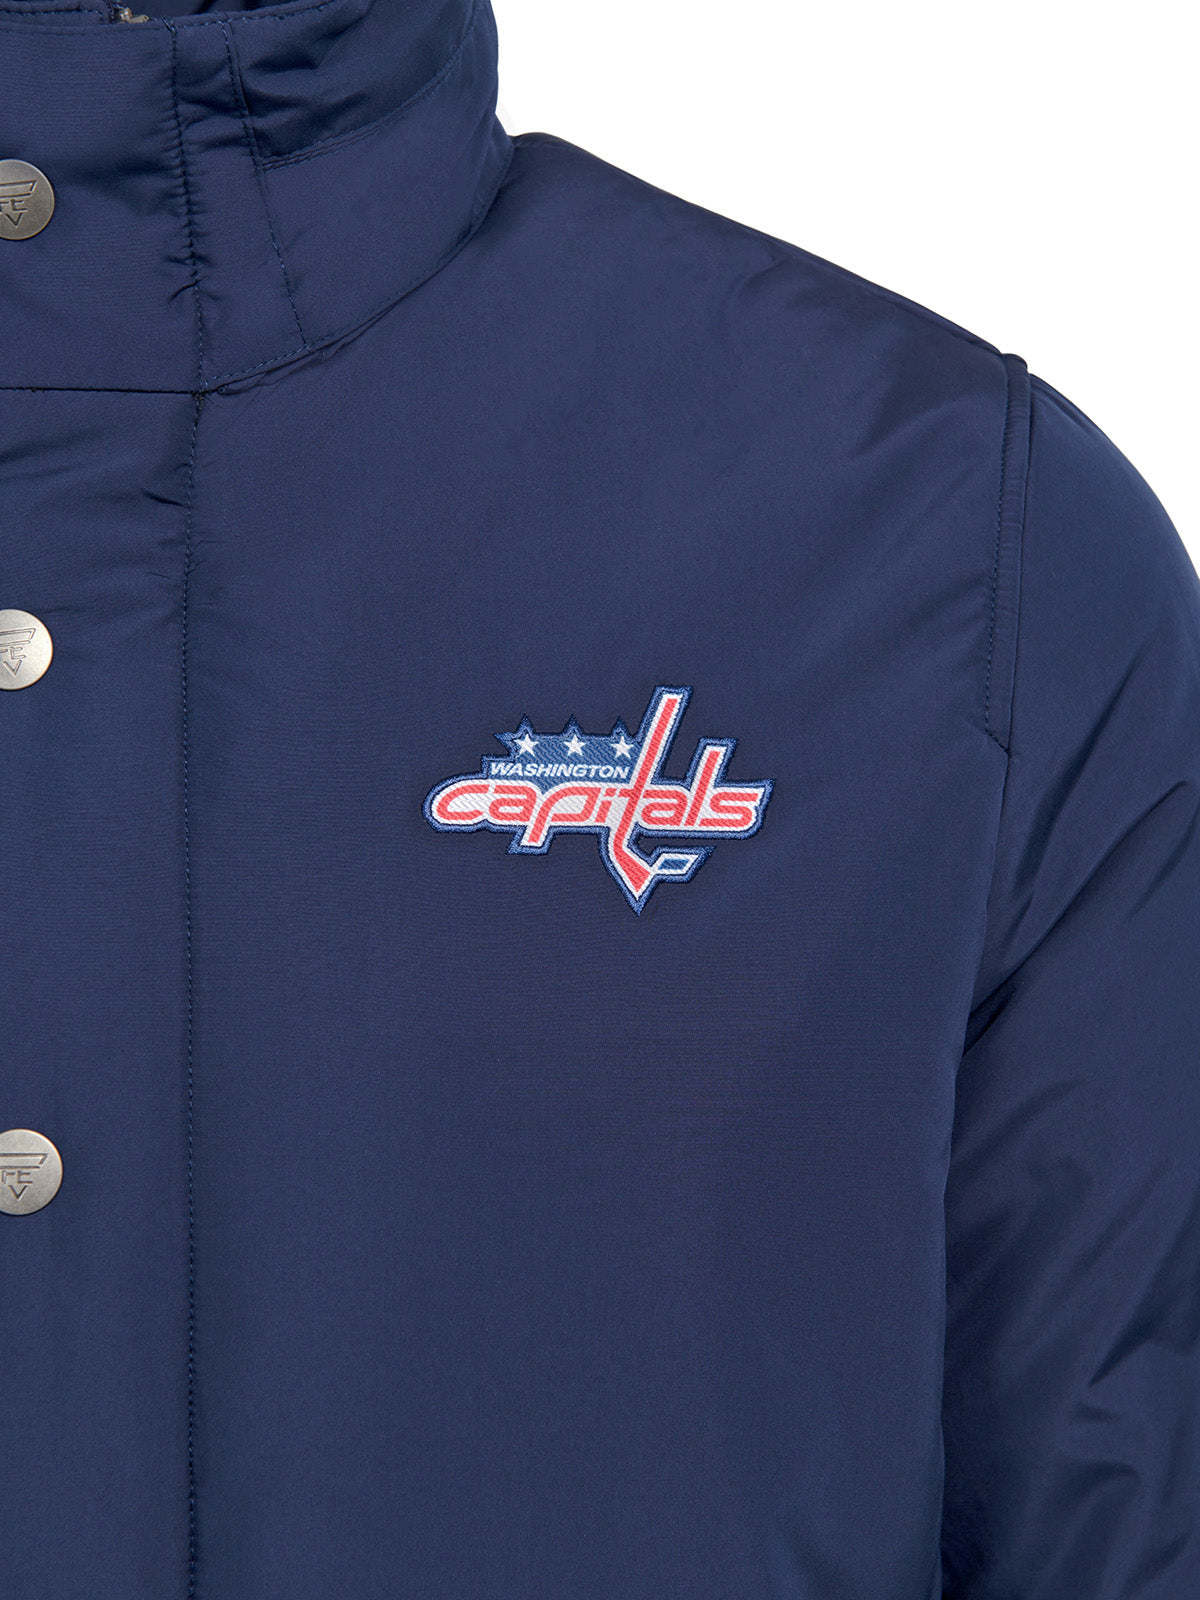 Washington Capitals Coach's Jacket